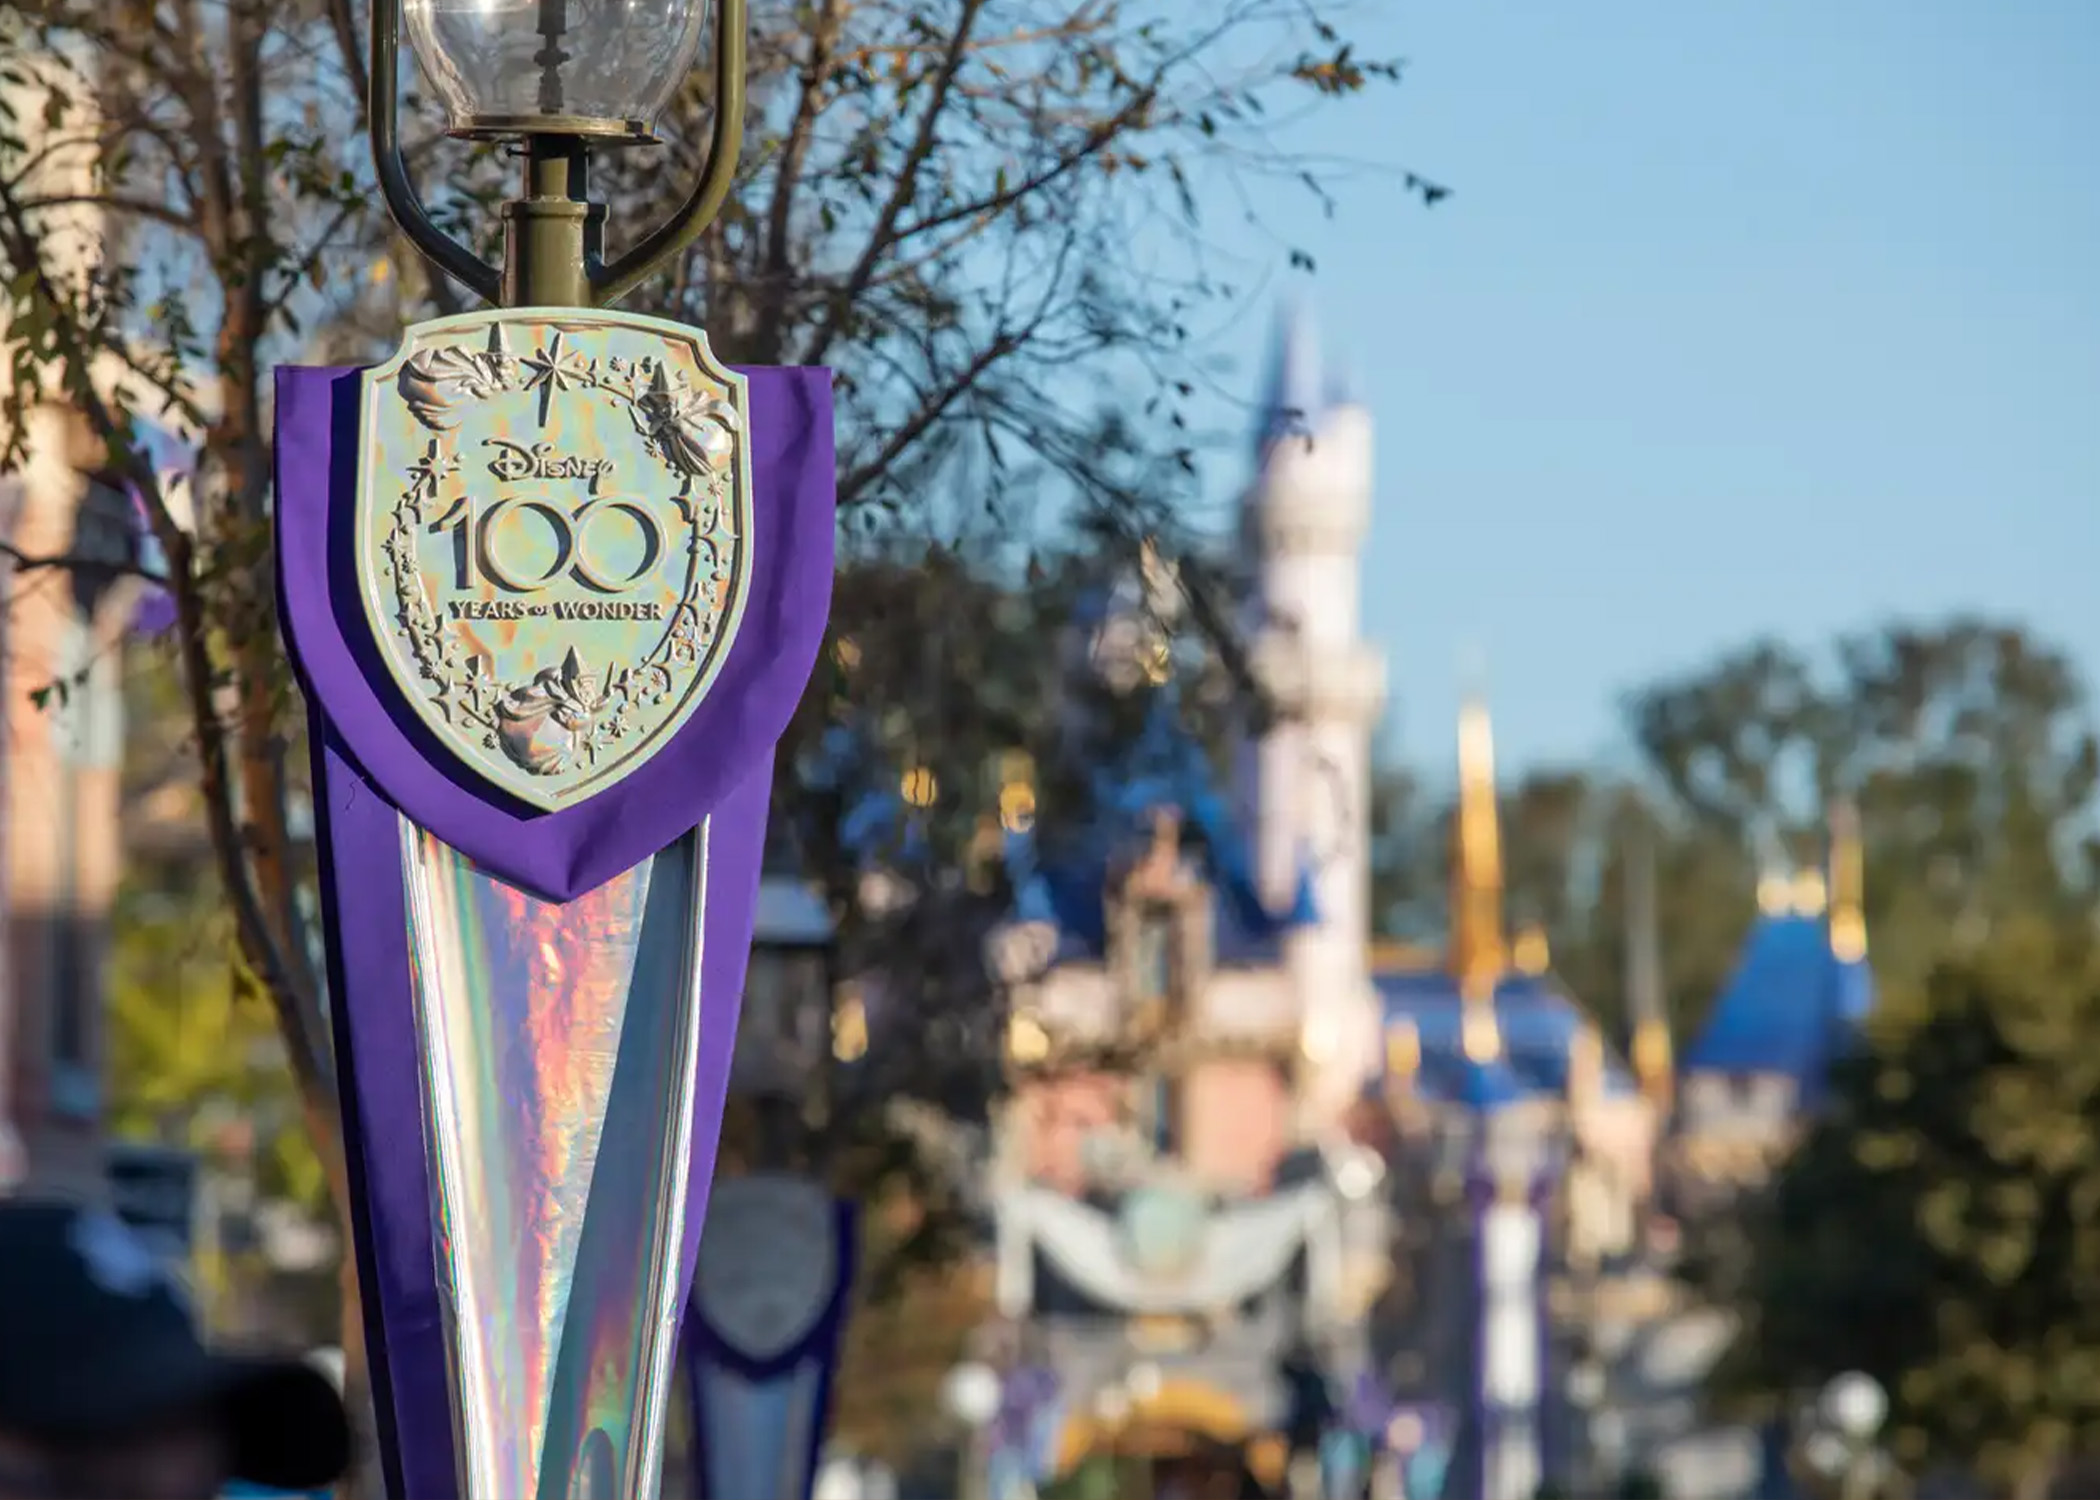 Disneyland 100 year anniversary sign